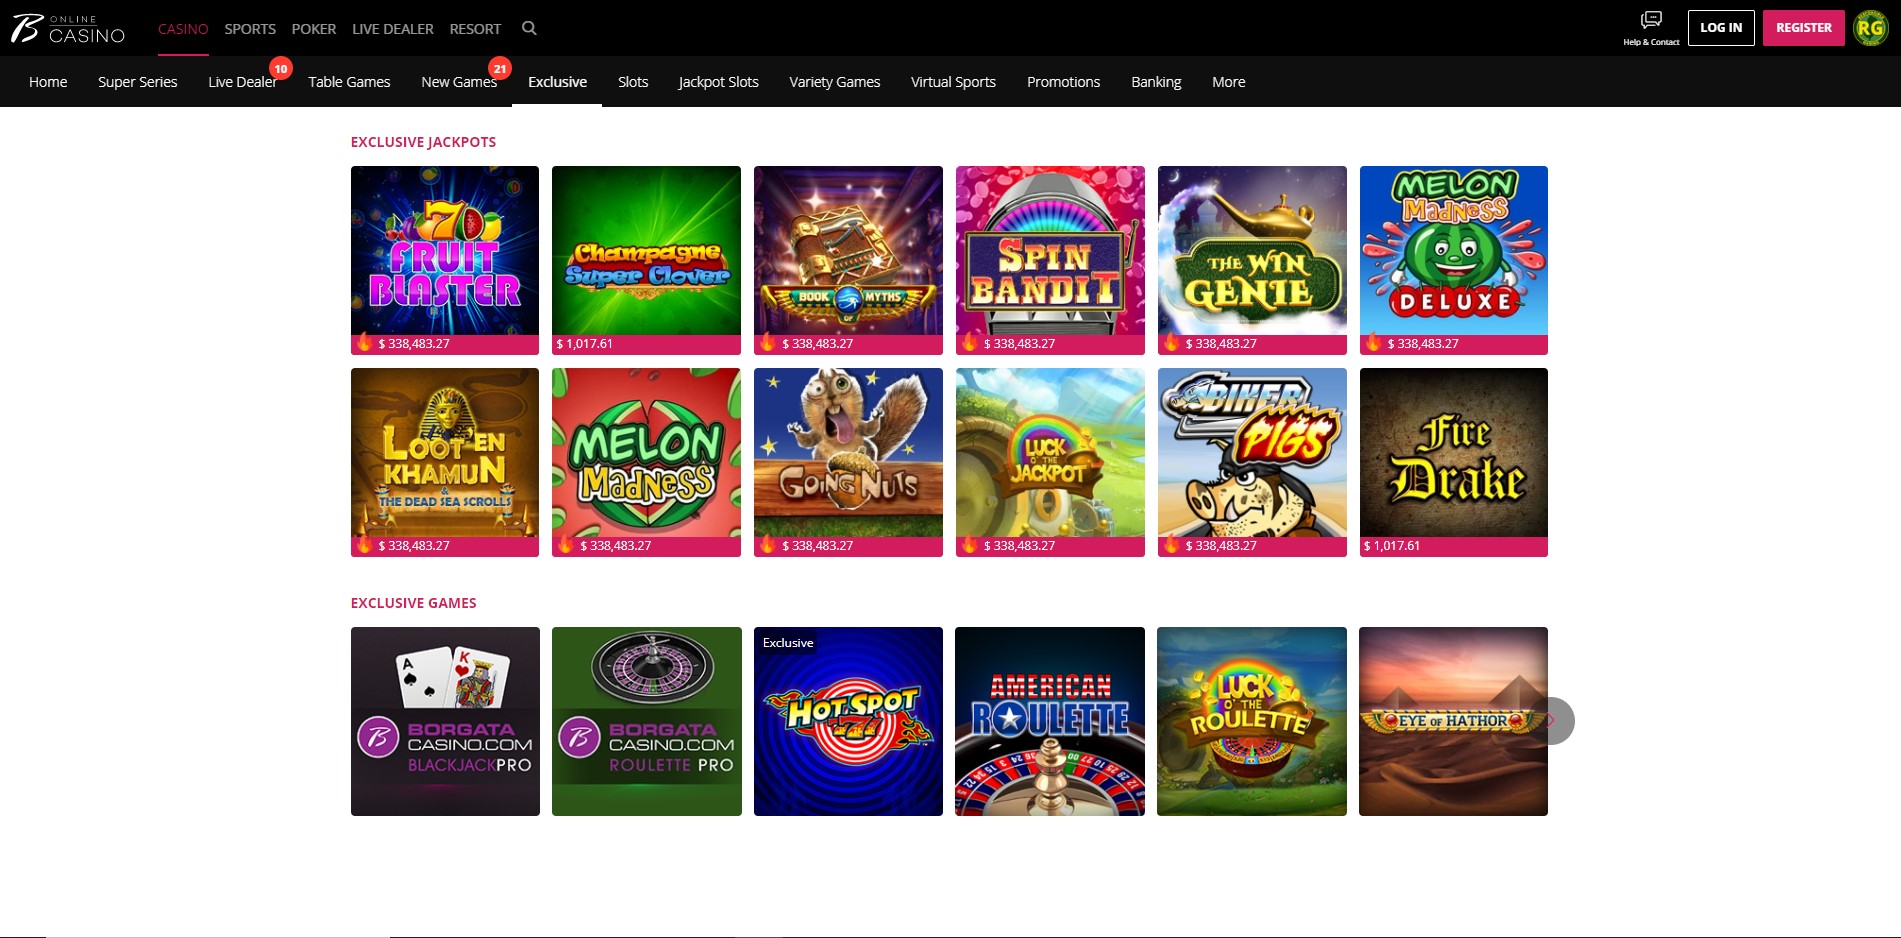 Borgata Casino Online downloading